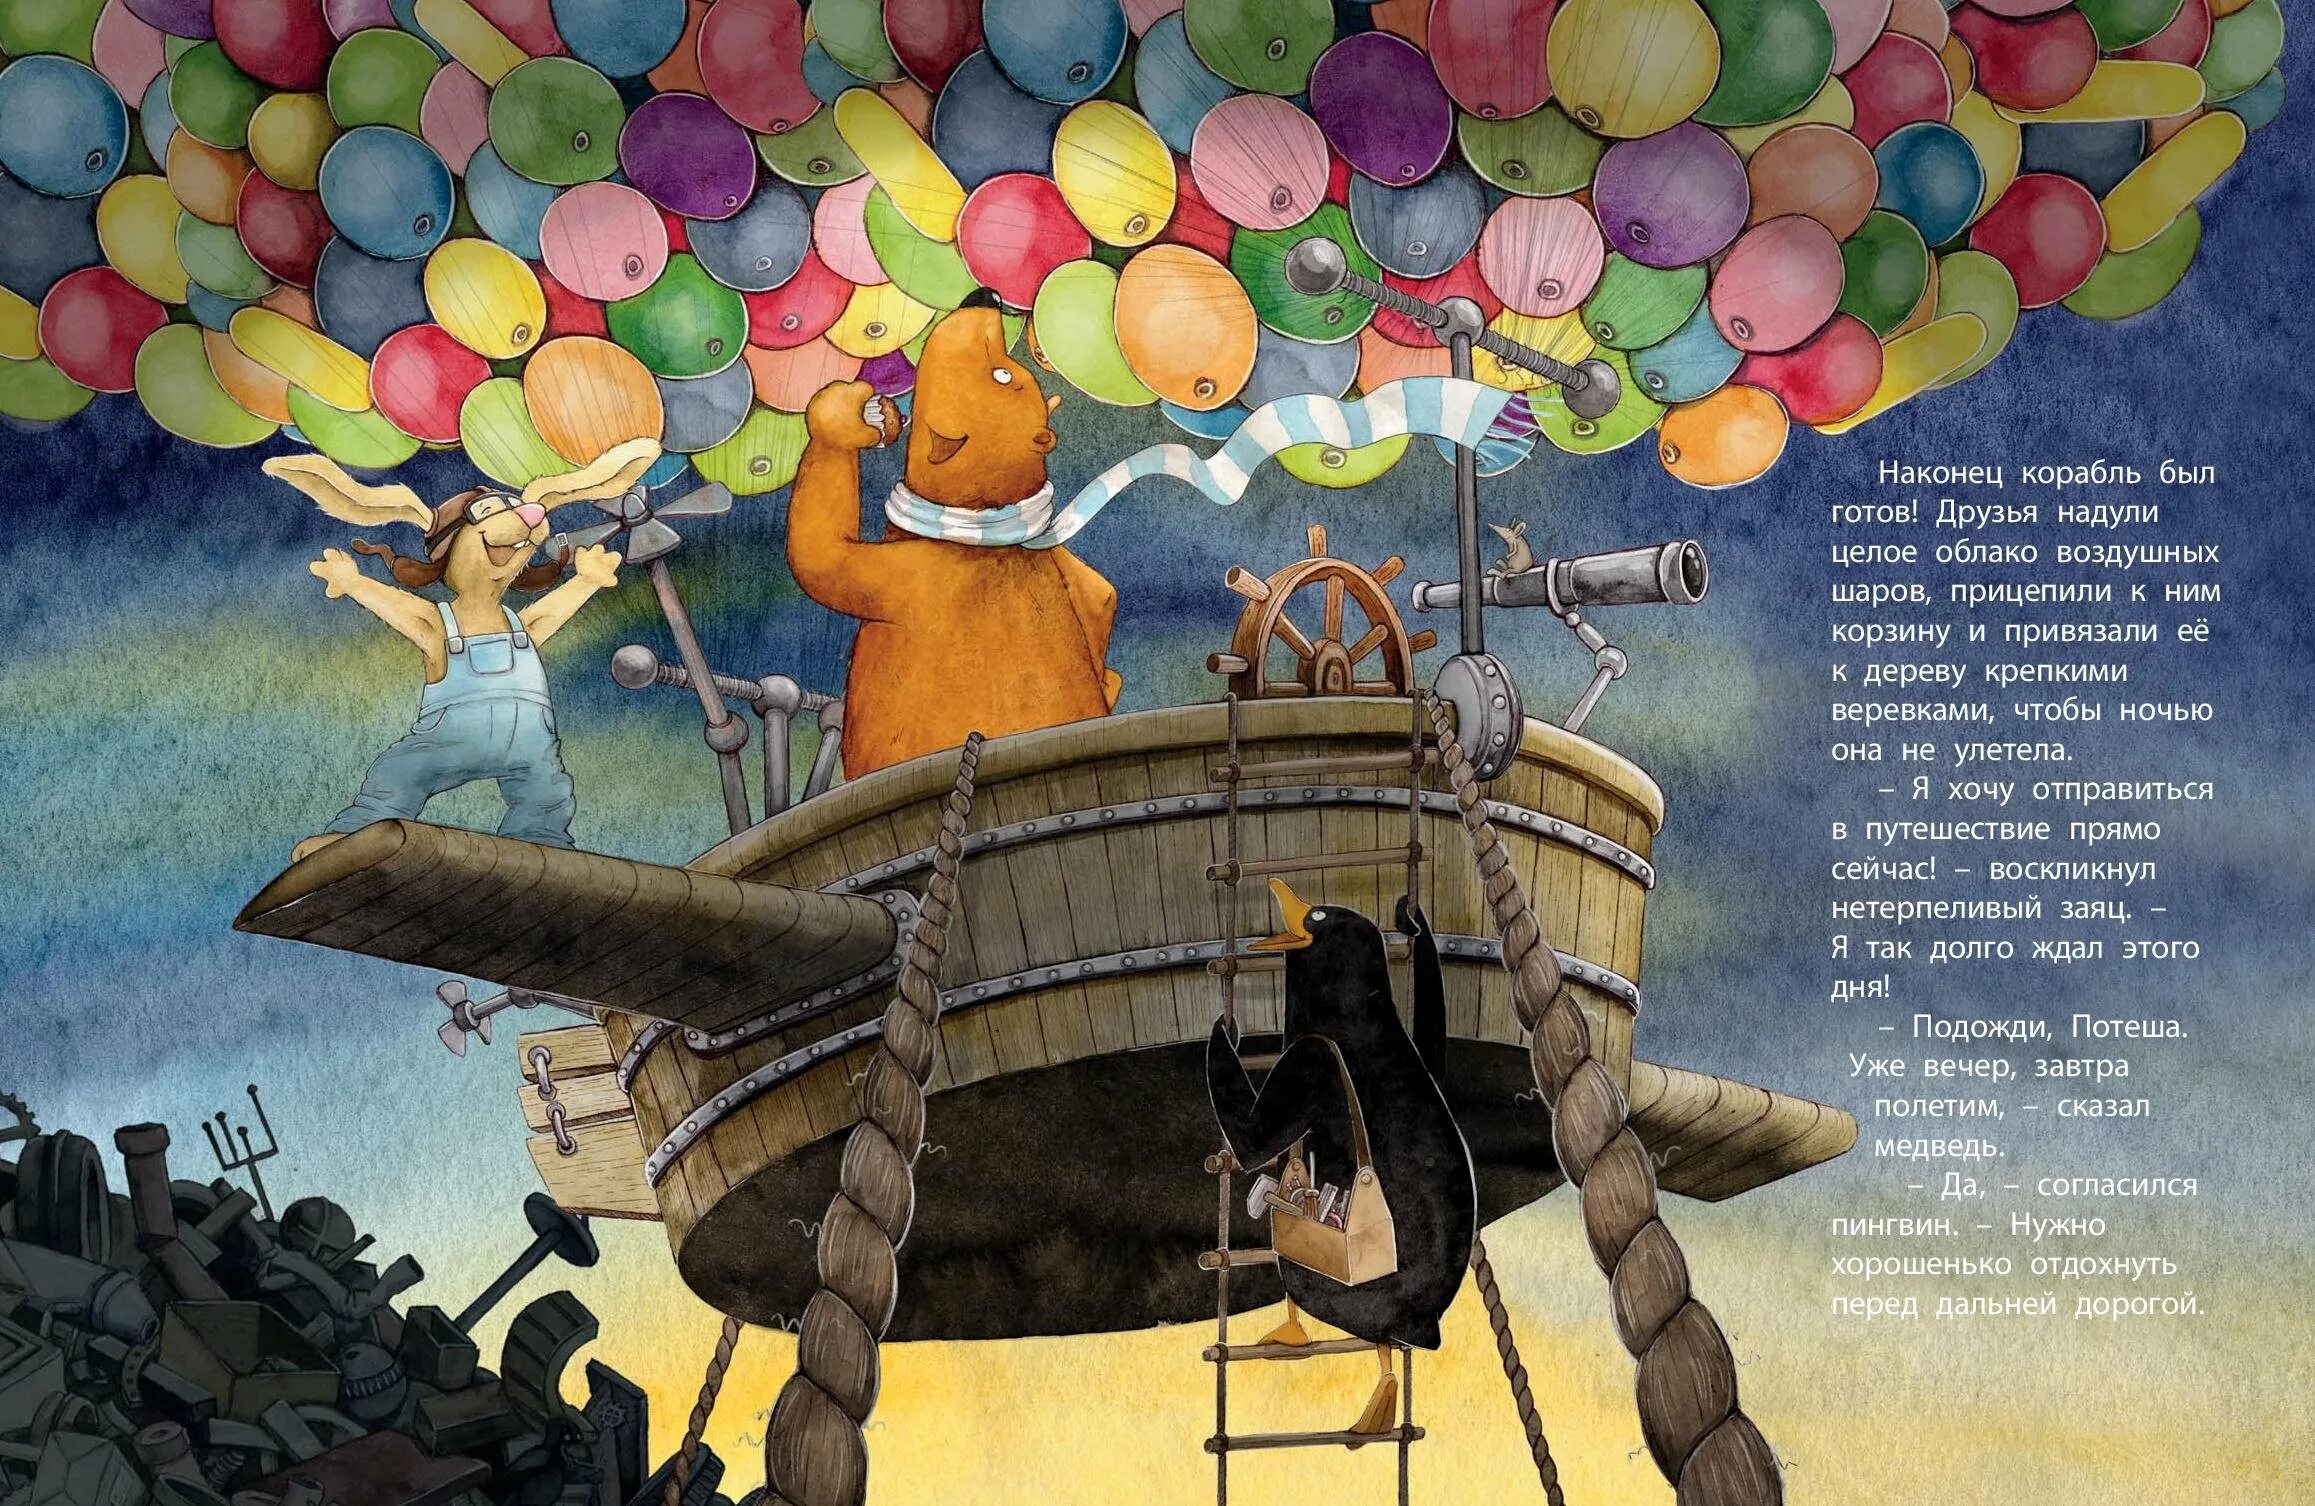 Воздушные шары читать. Путешествие на воздушных шариках ЭНАС-книга. Путешествие на воздушных шариках. Путешествие на воздушных шарах книга. День путешествия на воздушном шаре.